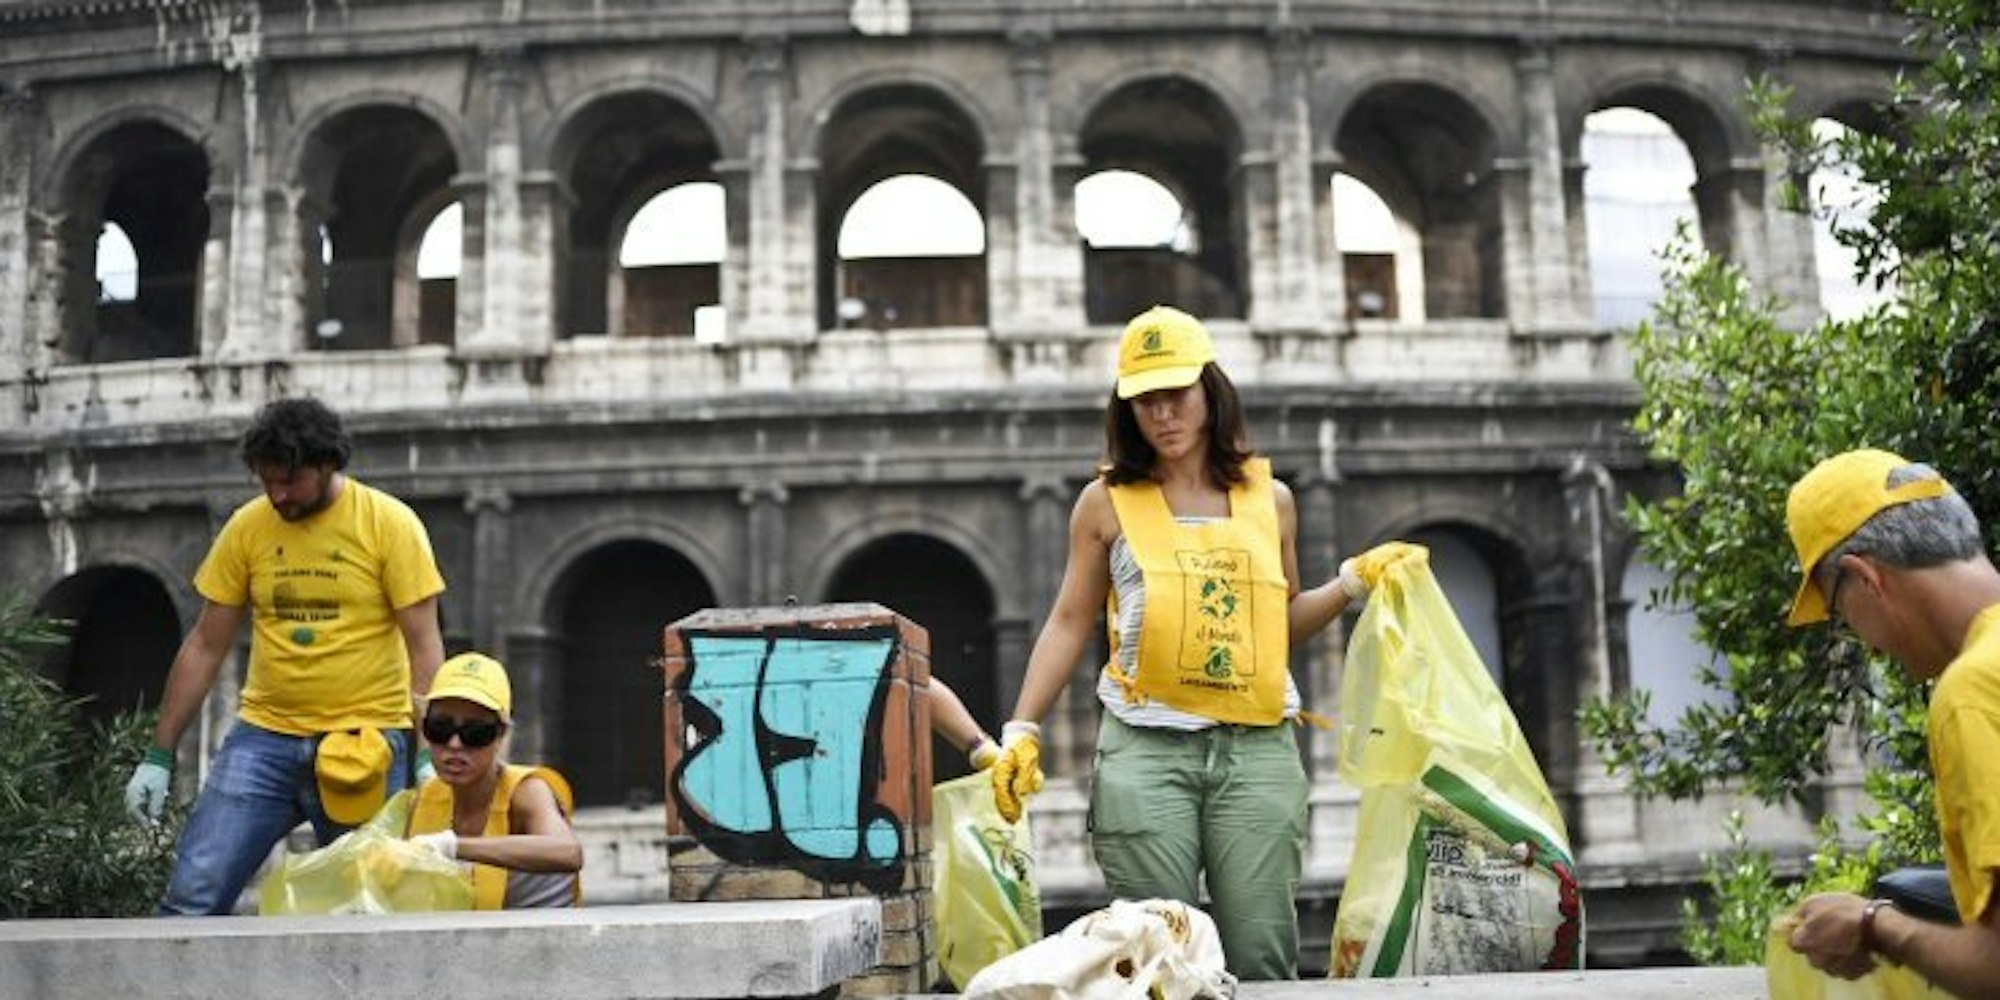 Weil zu viel Müll an historischen Stätten liegen bleibt, untersagt die Stadt Rom jetzt das Essen auf offener Straße.